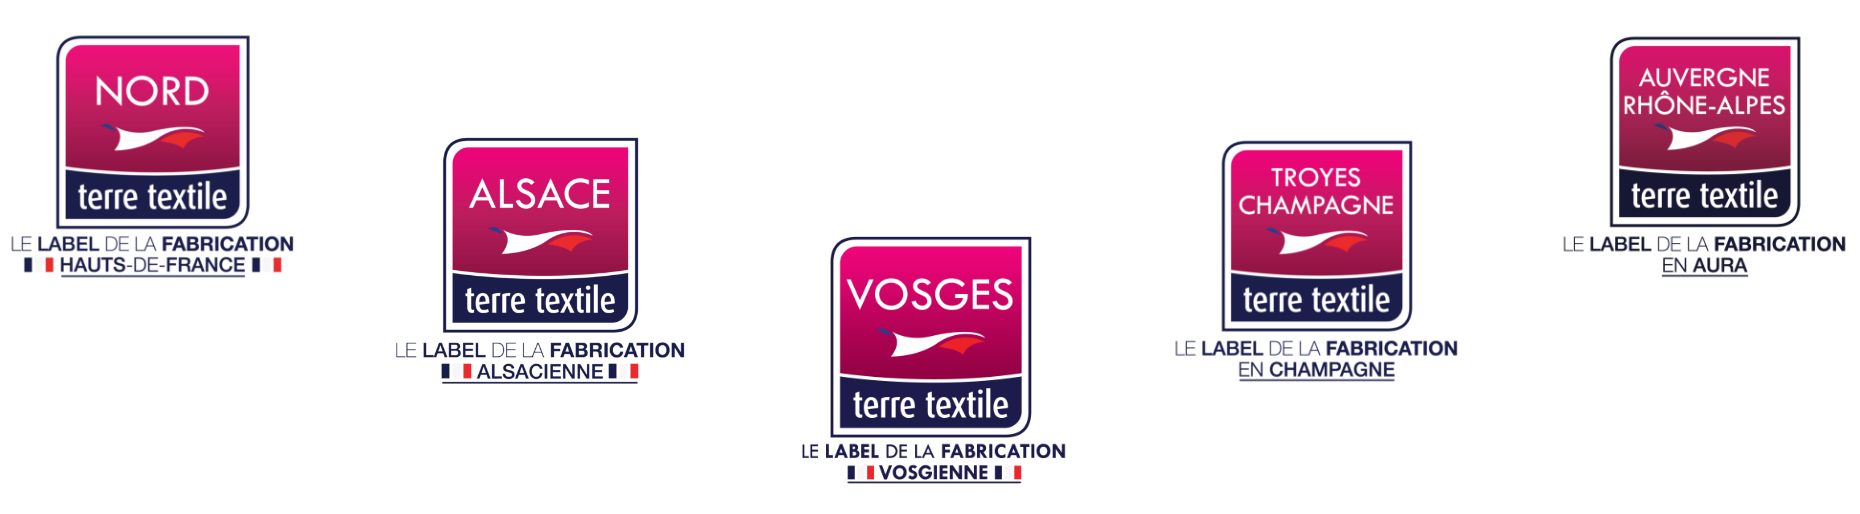 France Terre Textile Interface Logos Pyramide Inverse